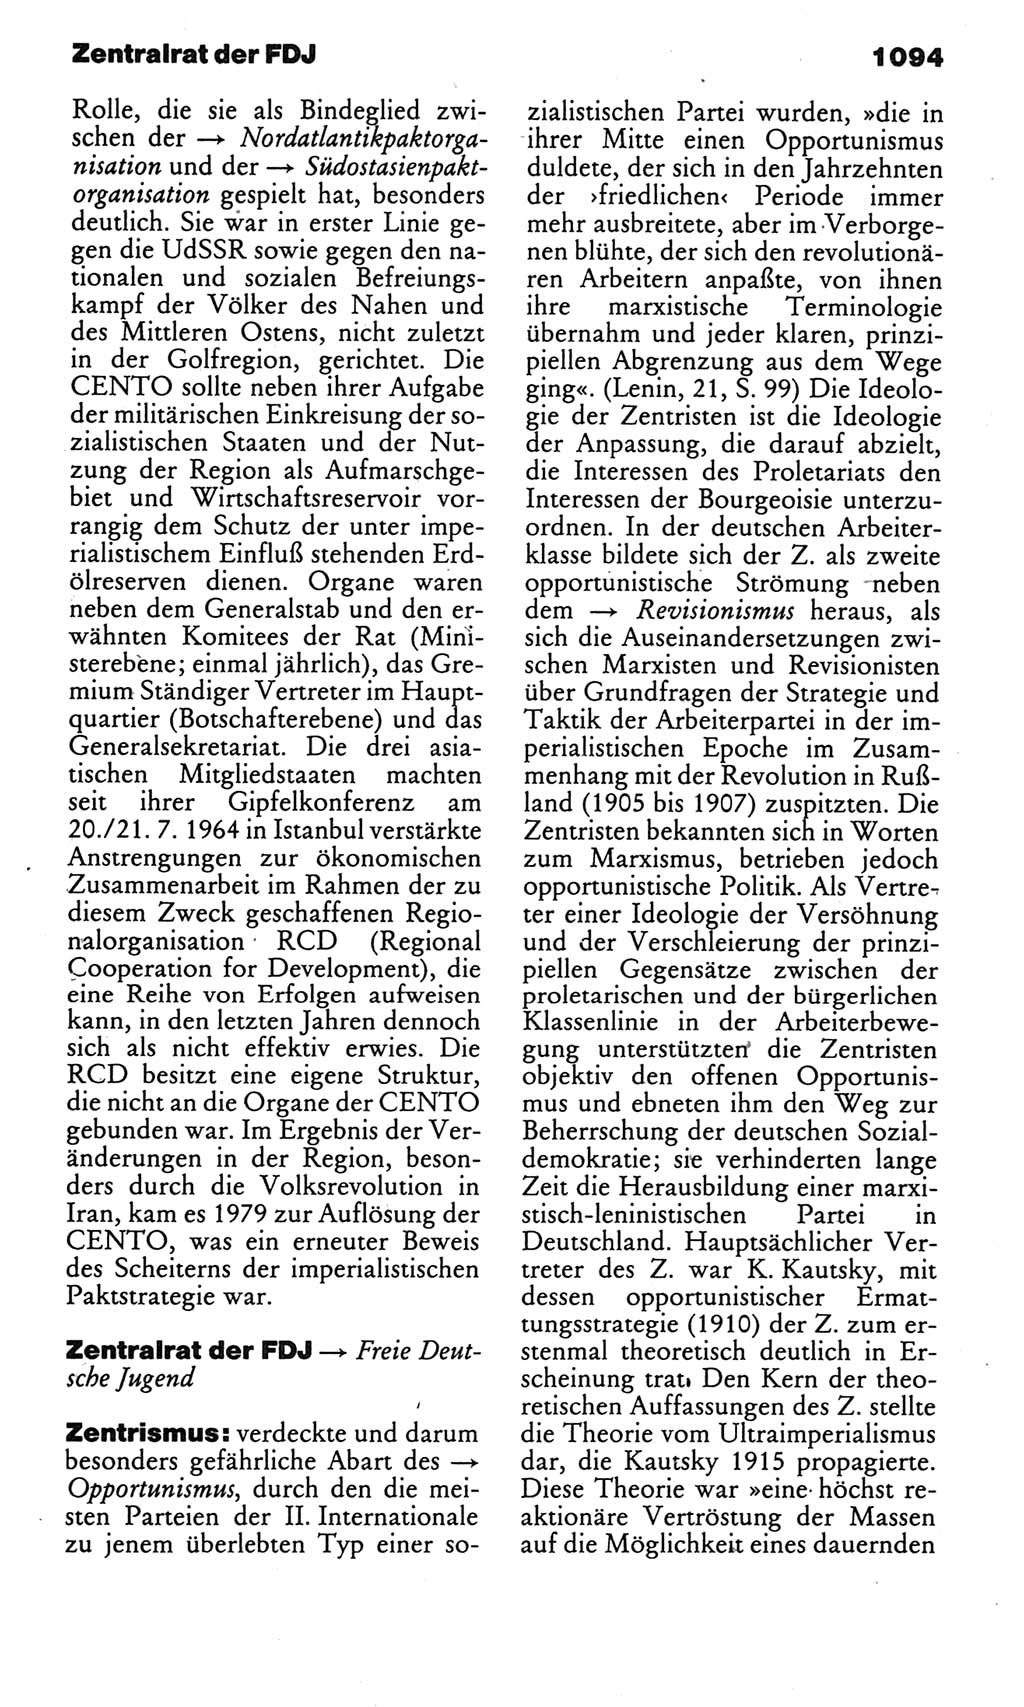 Kleines politisches Wörterbuch [Deutsche Demokratische Republik (DDR)] 1985, Seite 1094 (Kl. pol. Wb. DDR 1985, S. 1094)